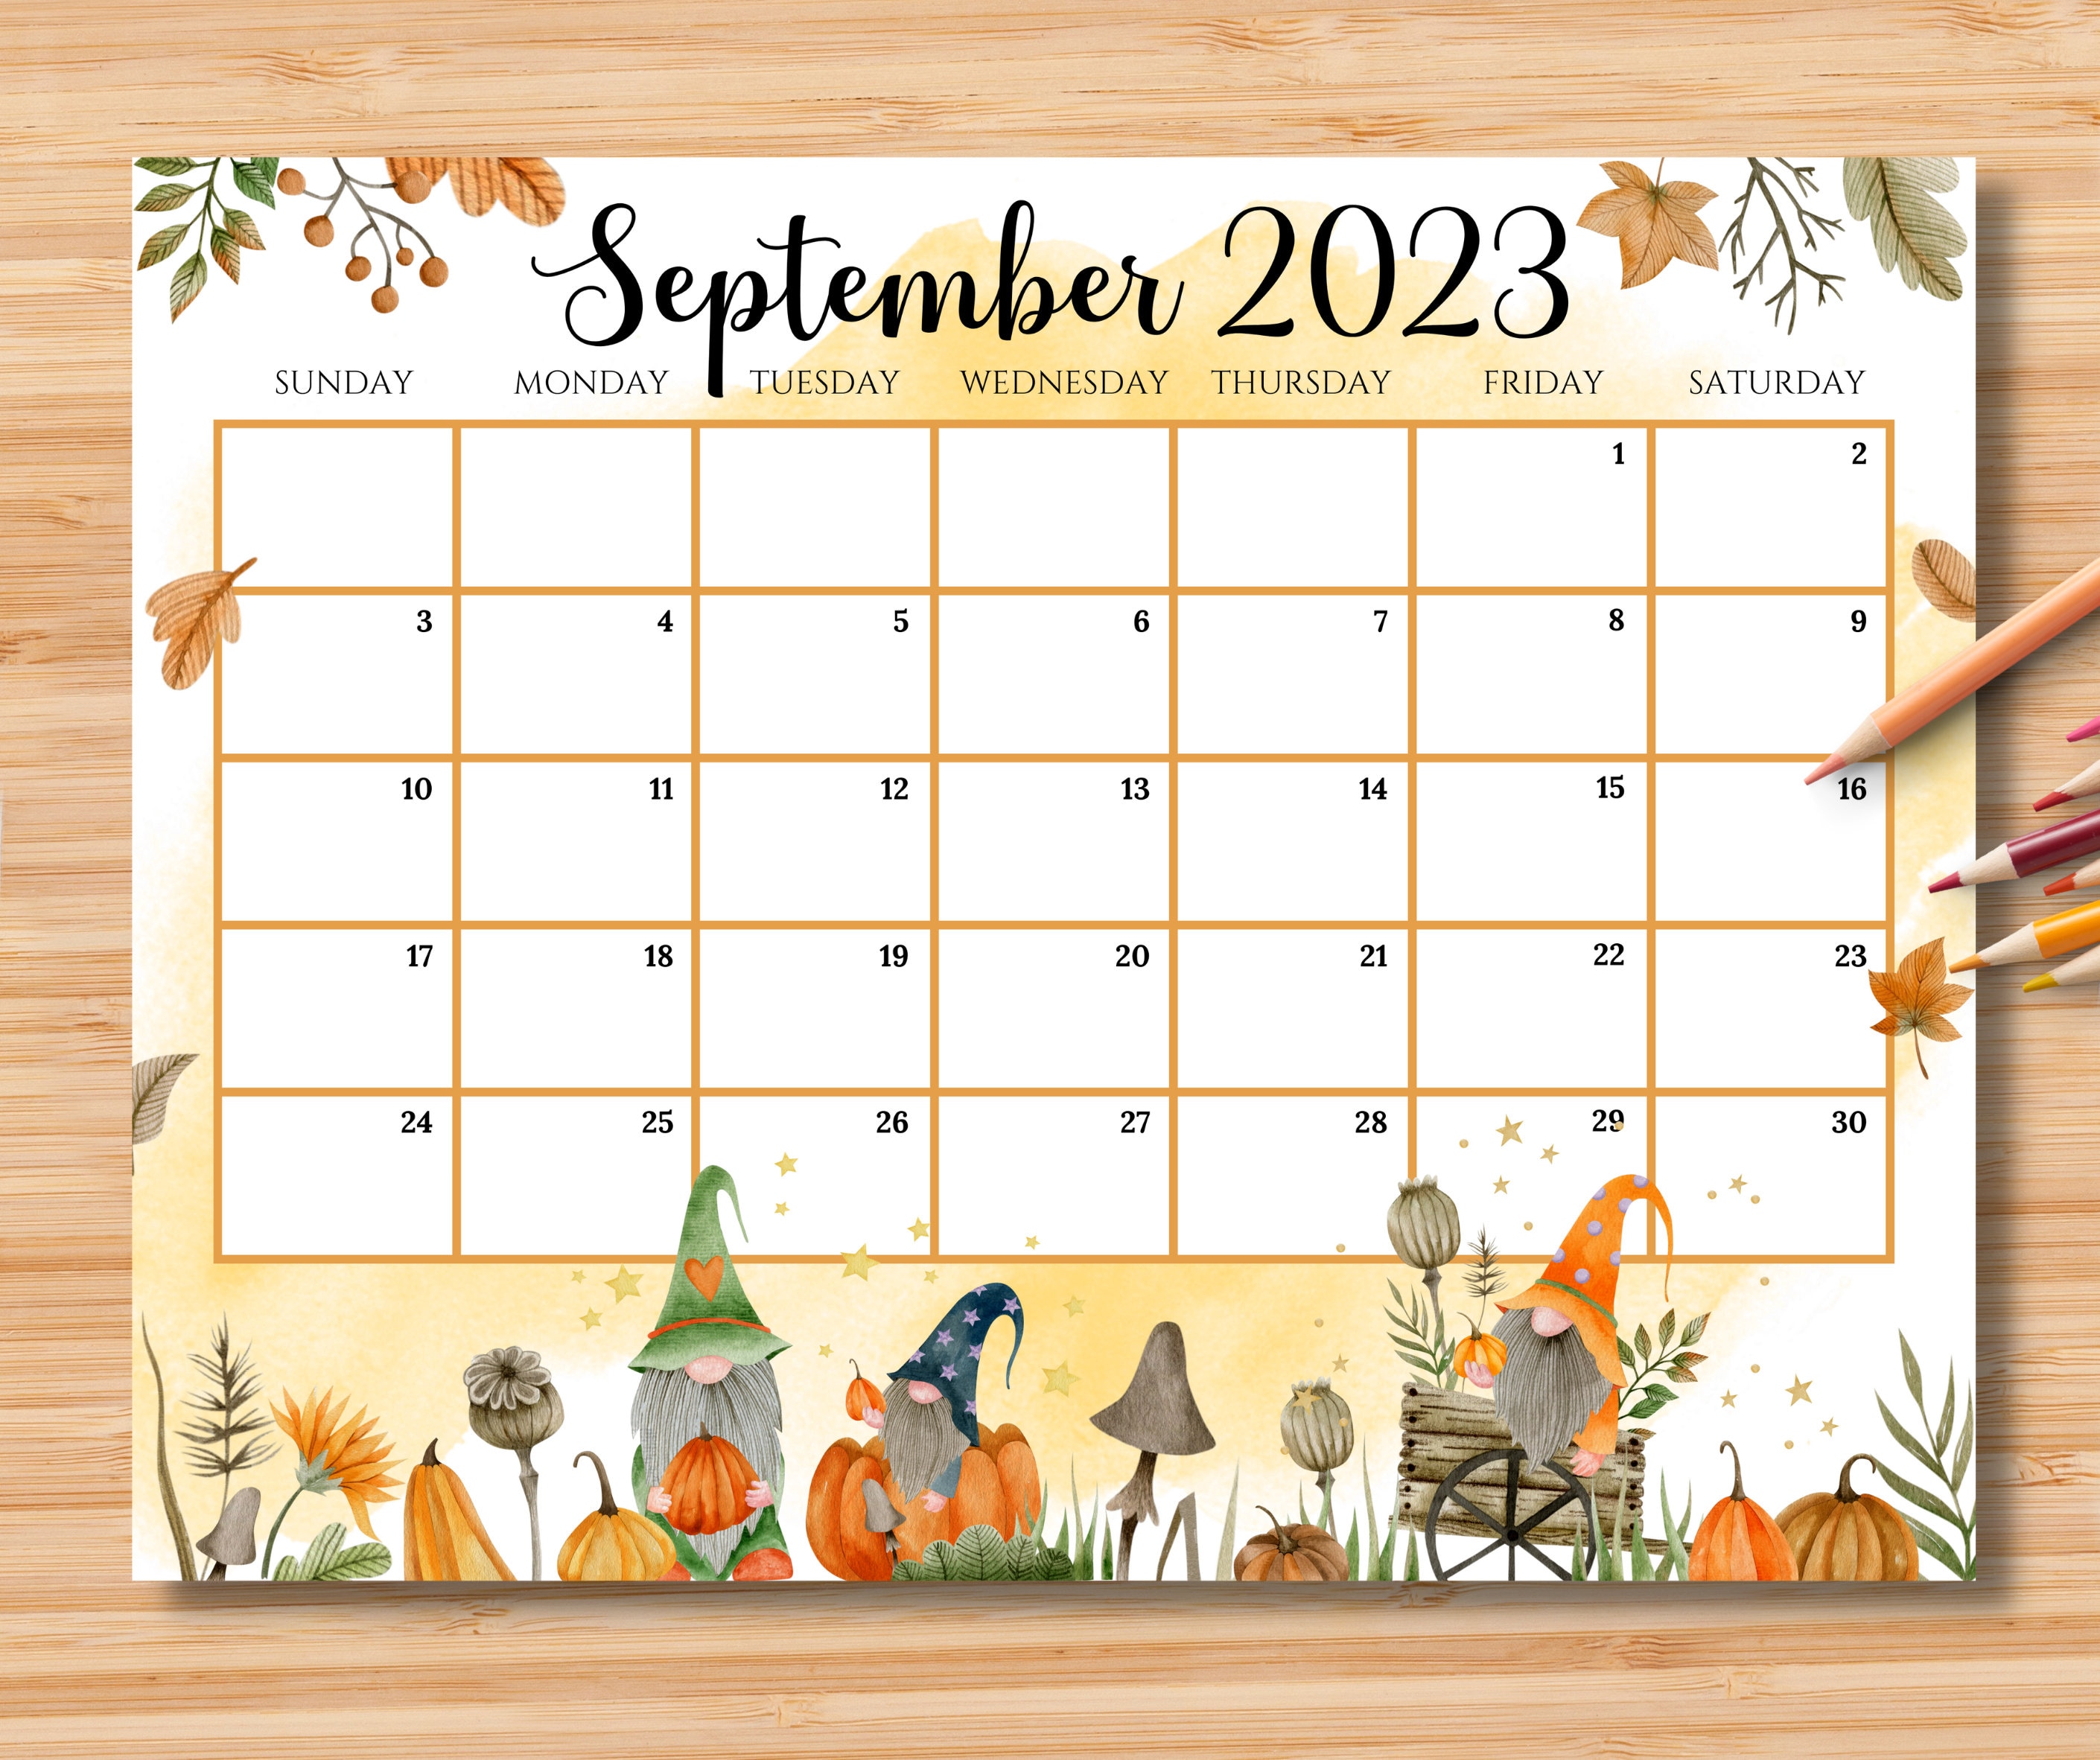 september-2023-calendar-fillable-get-calendar-2023-update